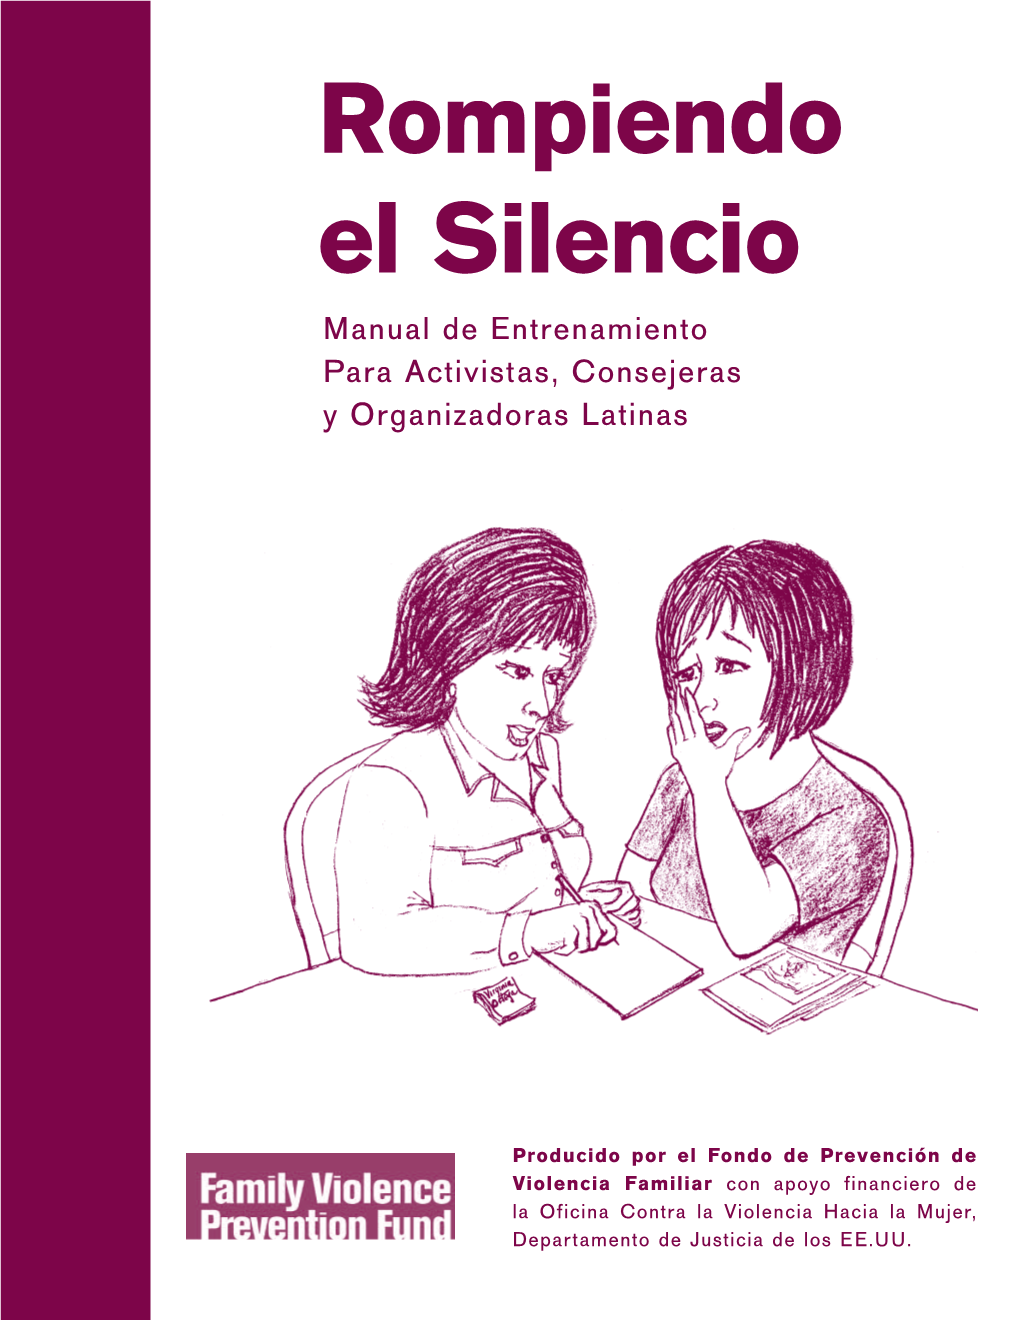 Rompiendo El Silencio Manual De Entrenamiento Para Activistas, Consejeras Y Organizadoras Latinas